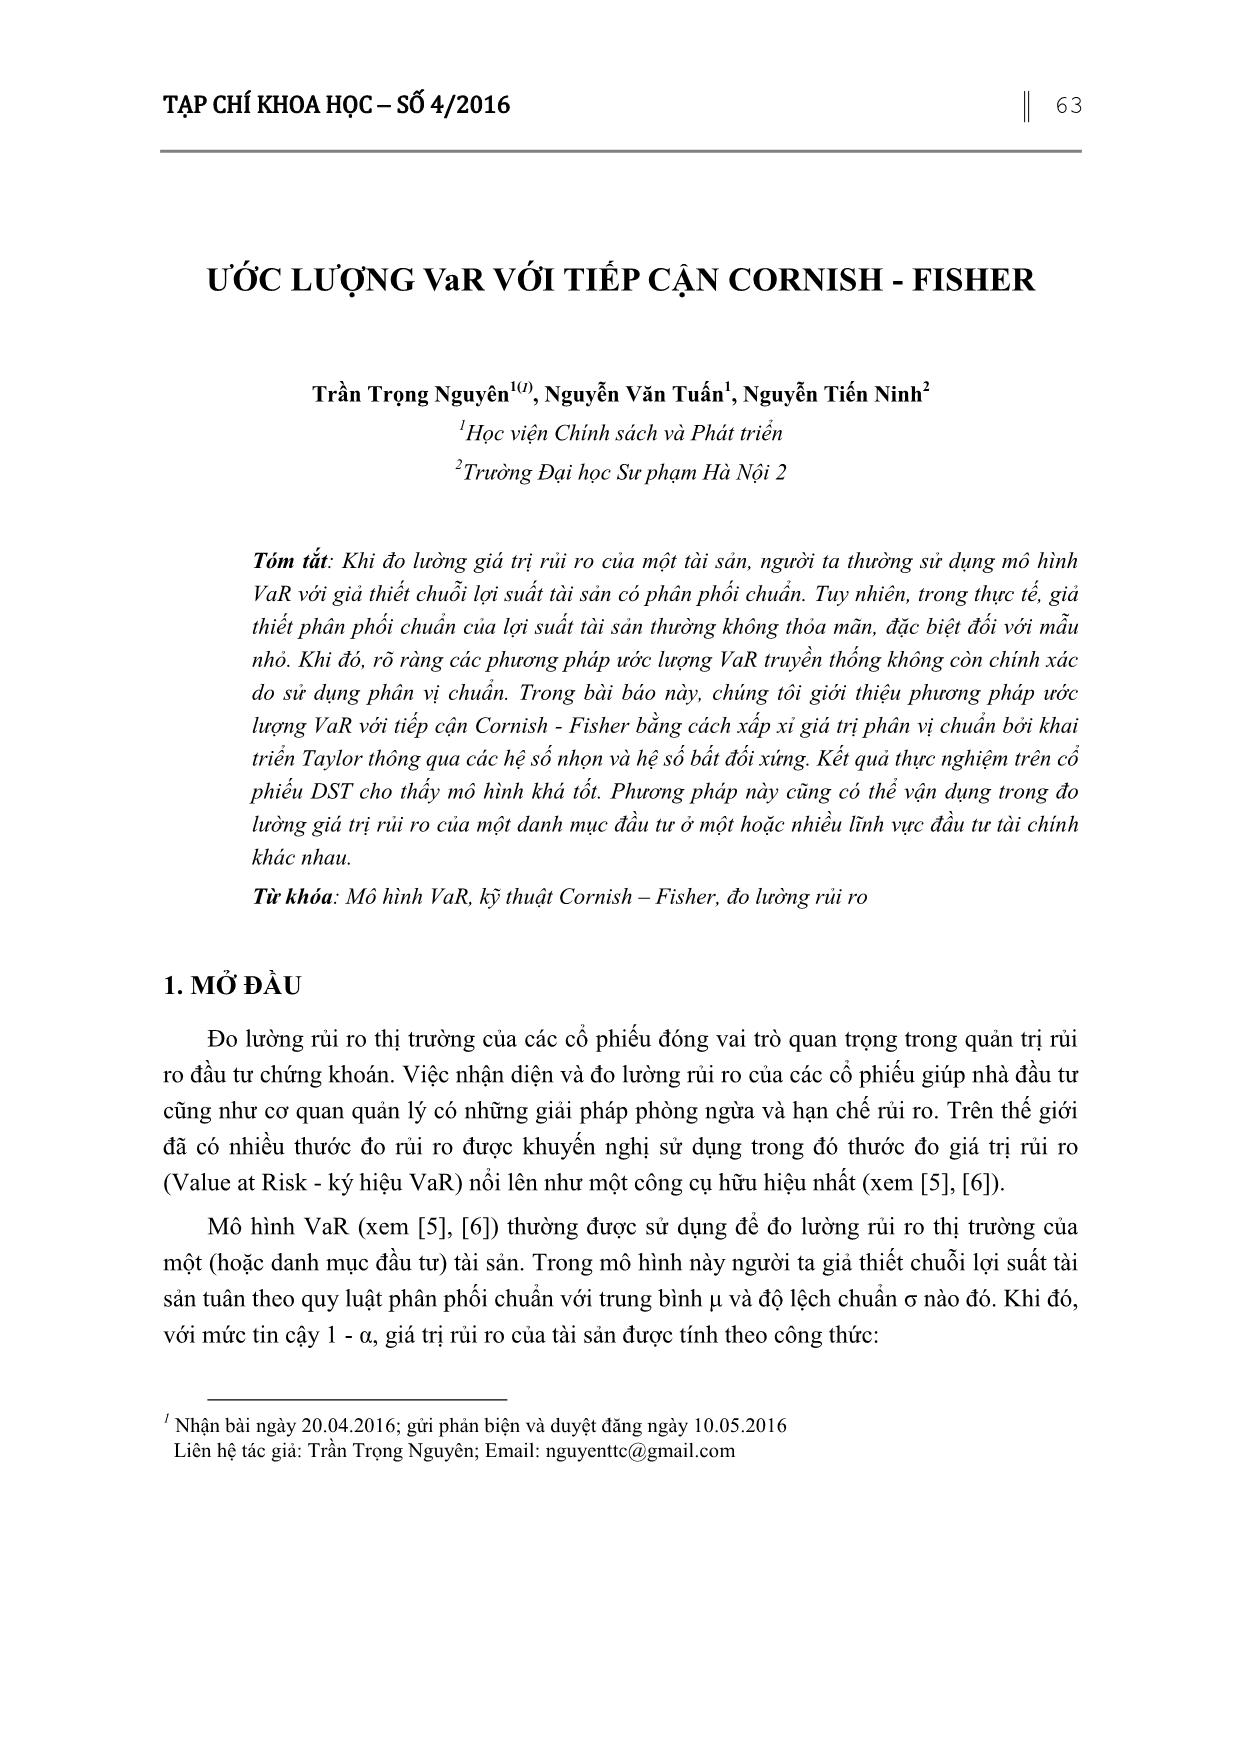 Ước lượng VaR với tiếp cận Cornish - Fisher trang 1